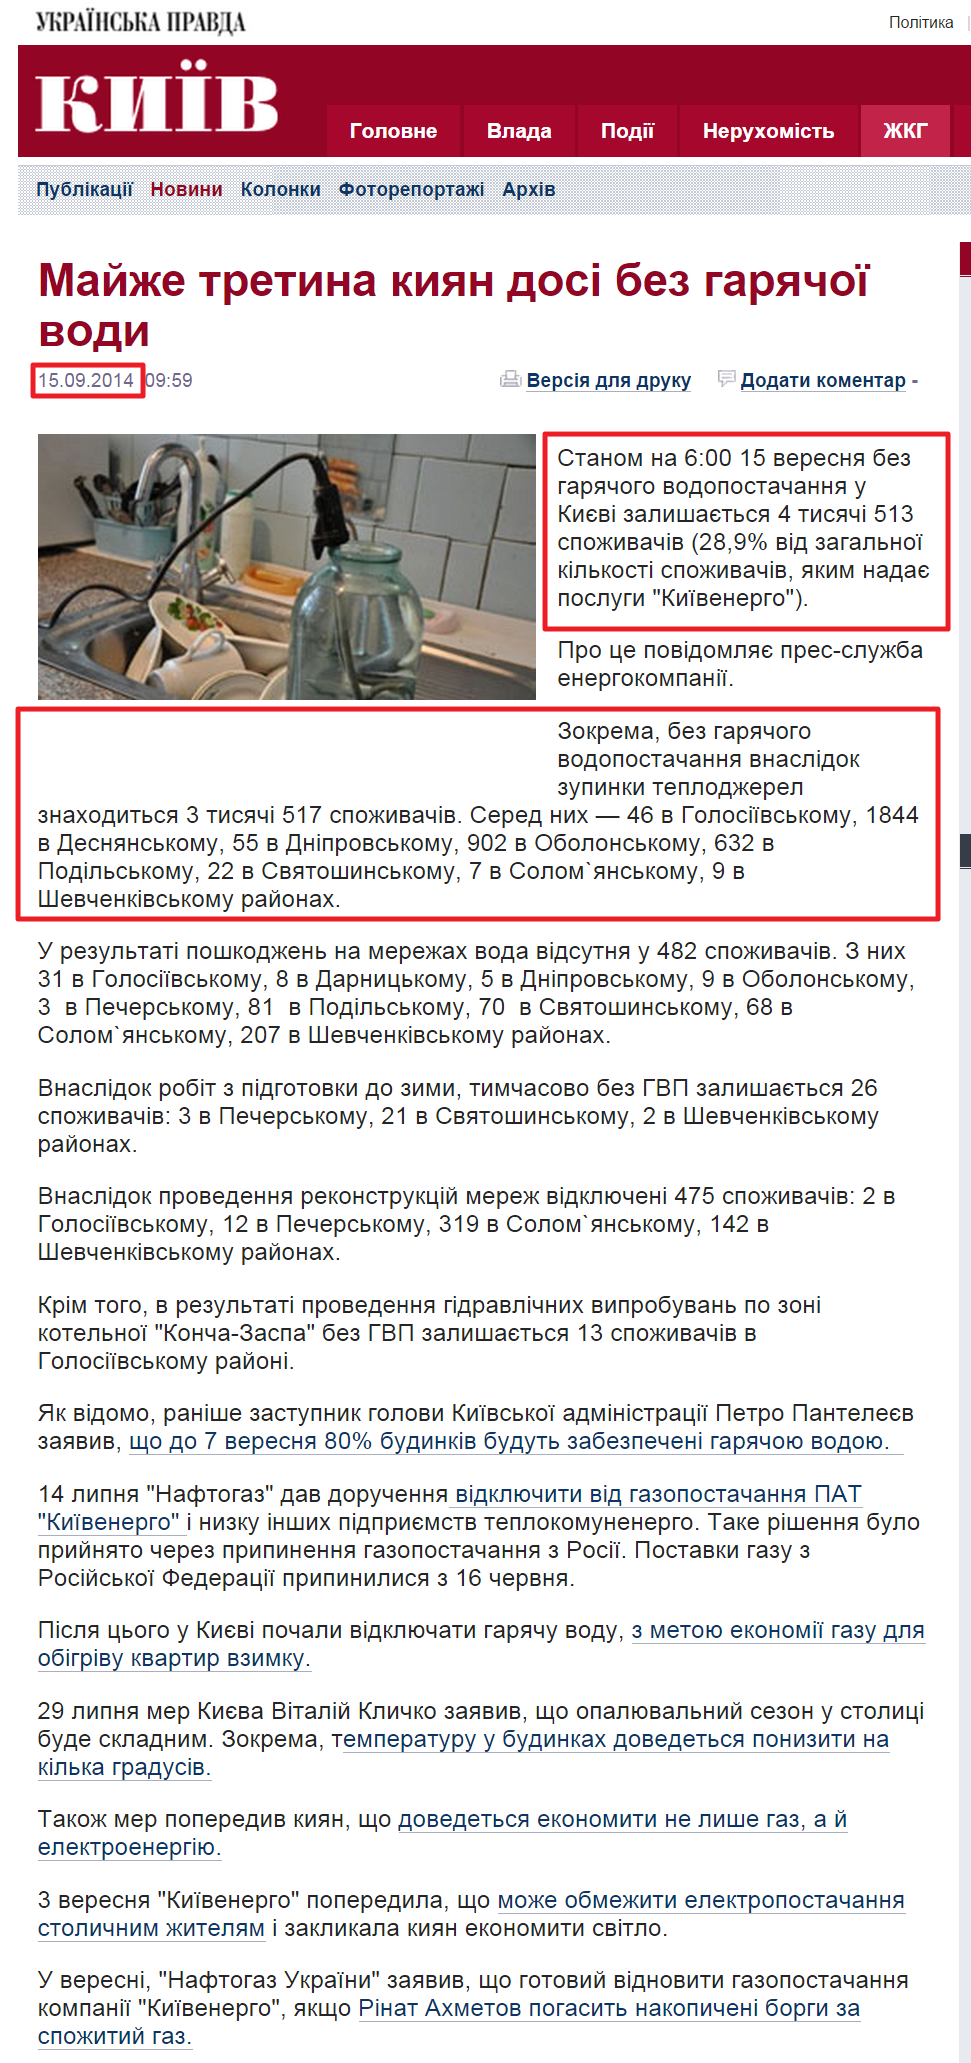 http://kiev.pravda.com.ua/news/54168e3725e7c/